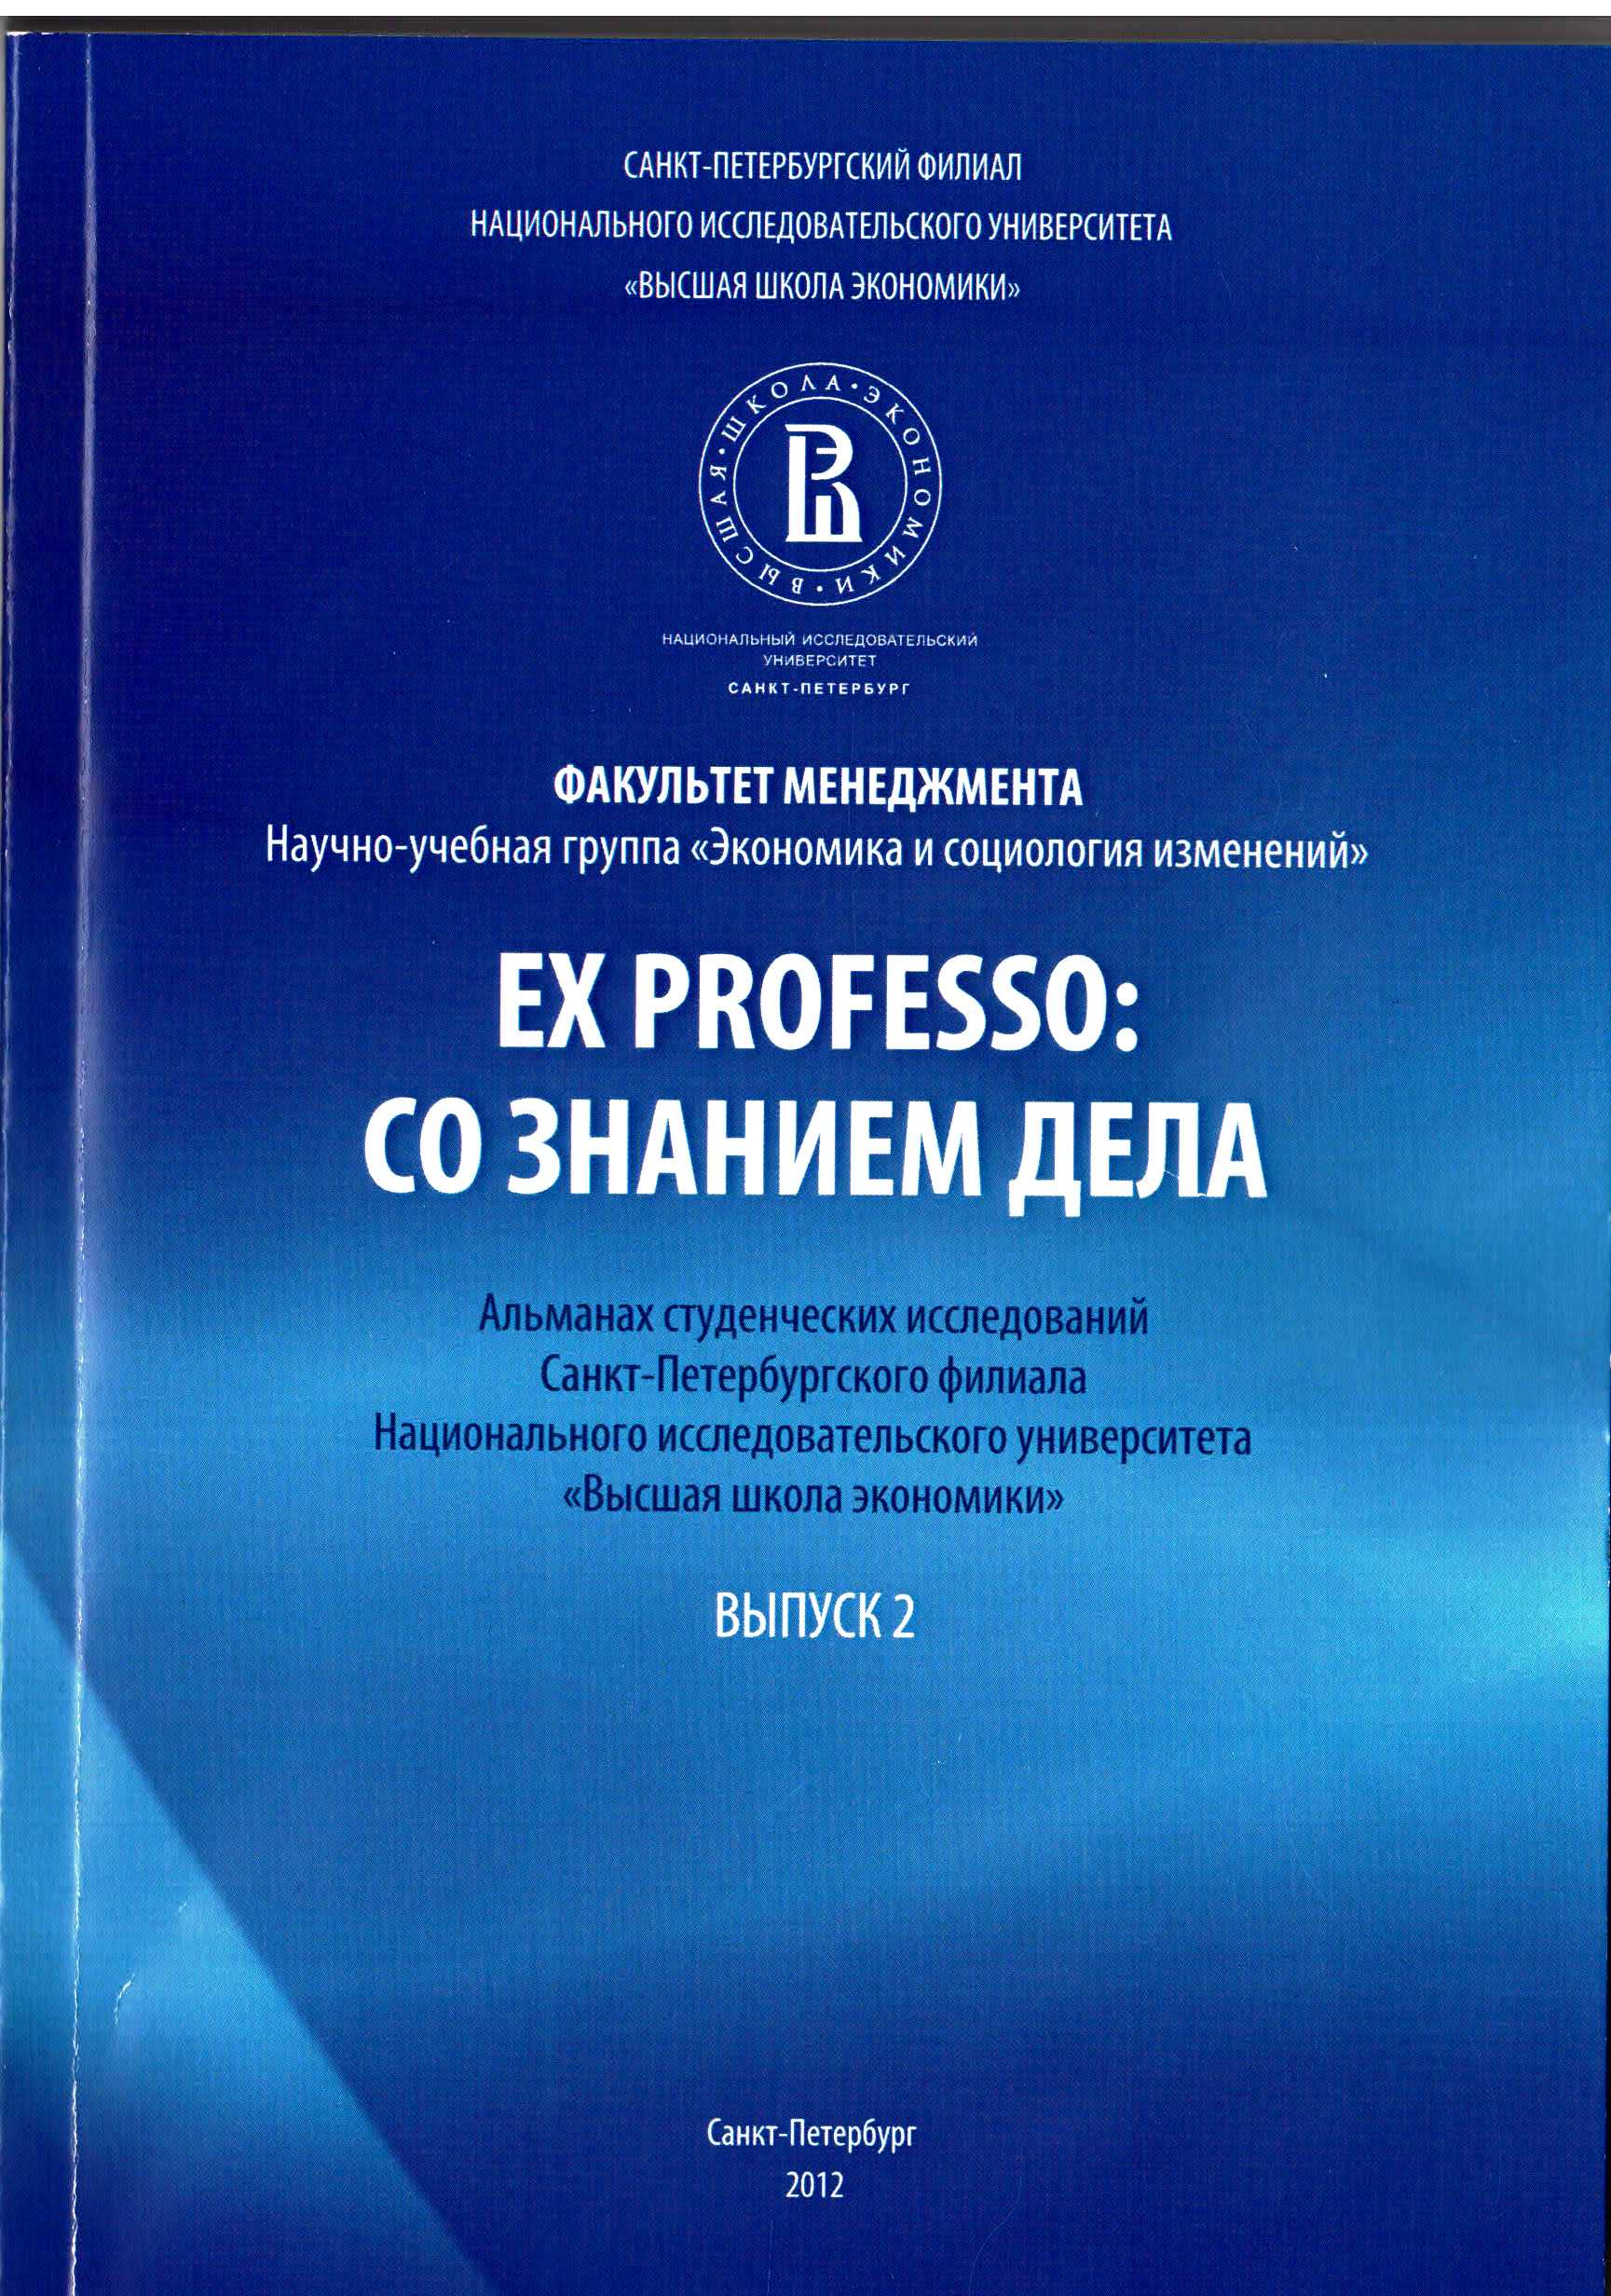 Ex Professo: Со знанием дела: альманах студенческих исследований Санкт-Петербургского филиала НИУ ВШЭ